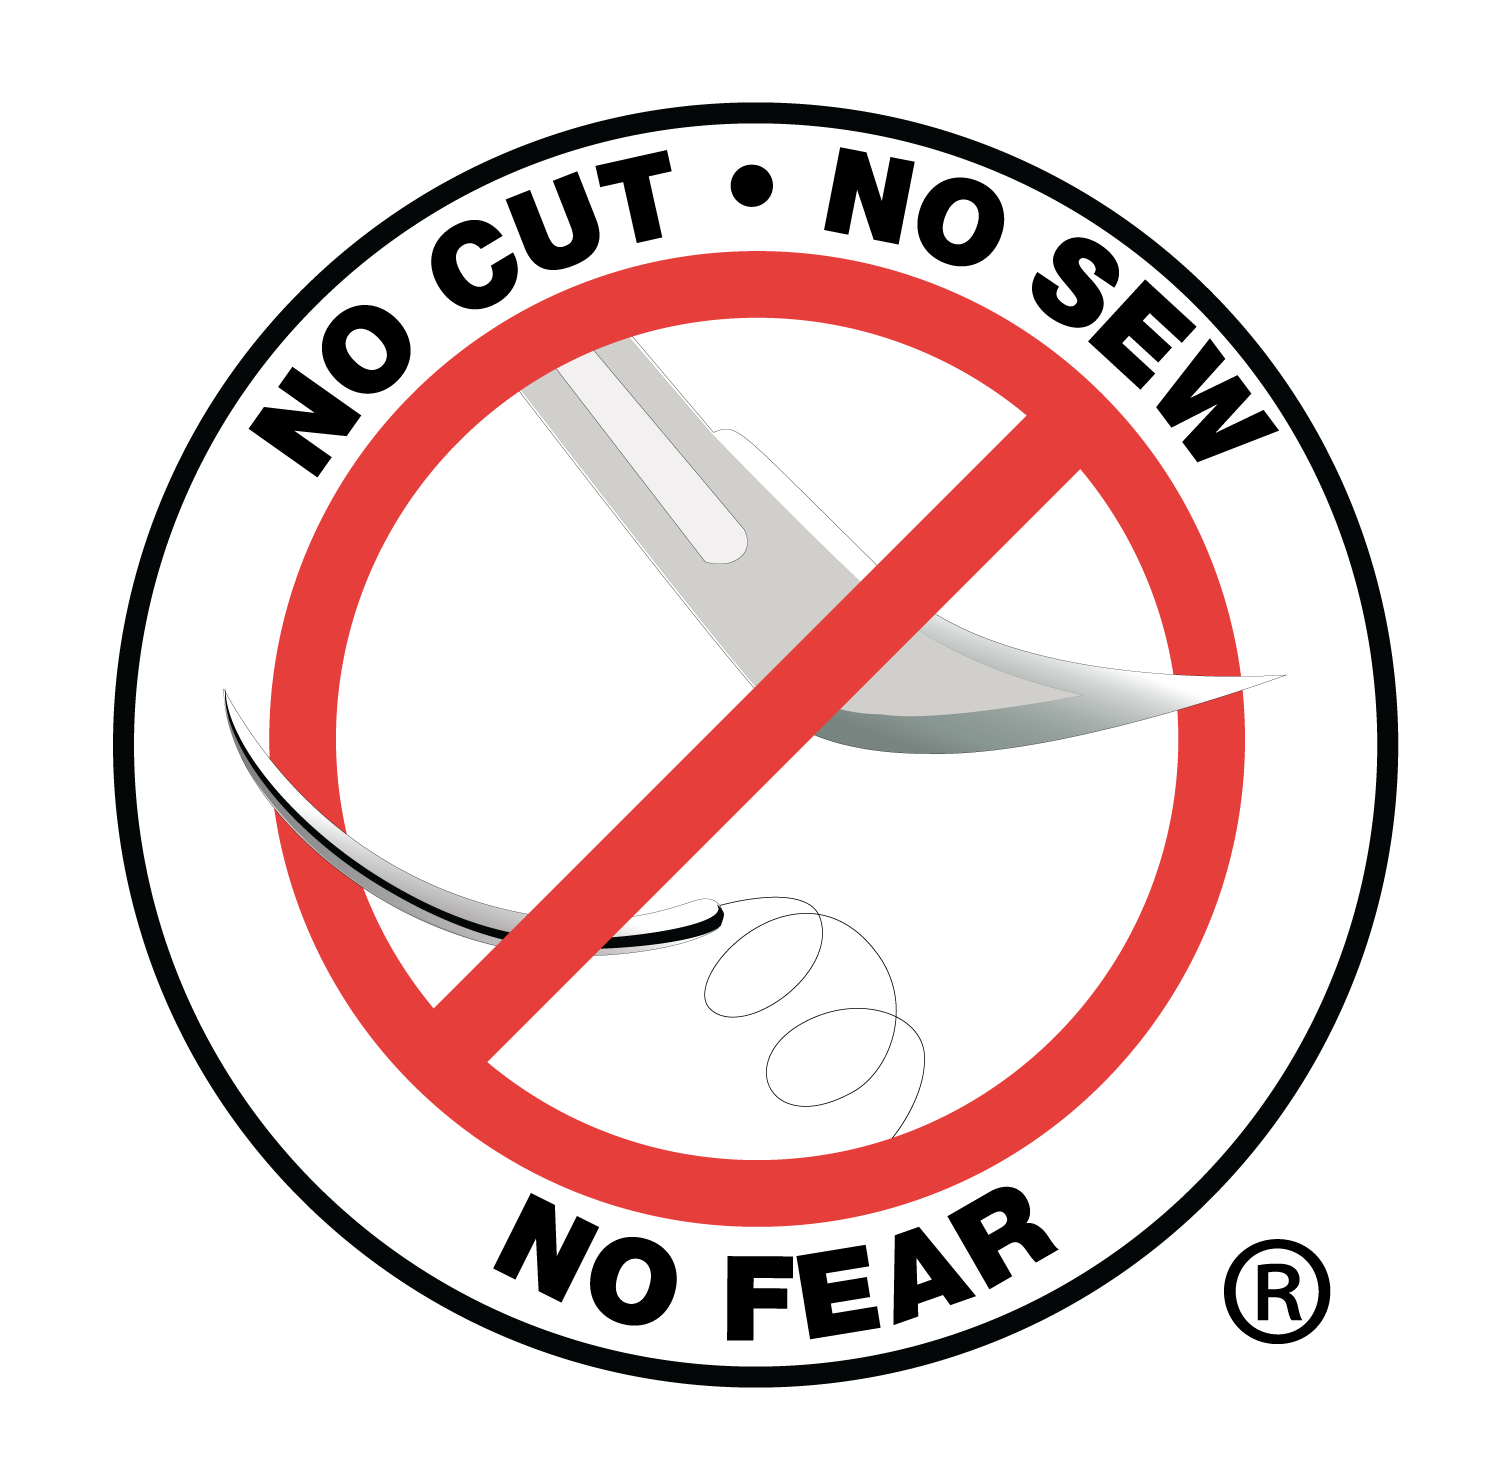 No Cut, No Sew, No Fear